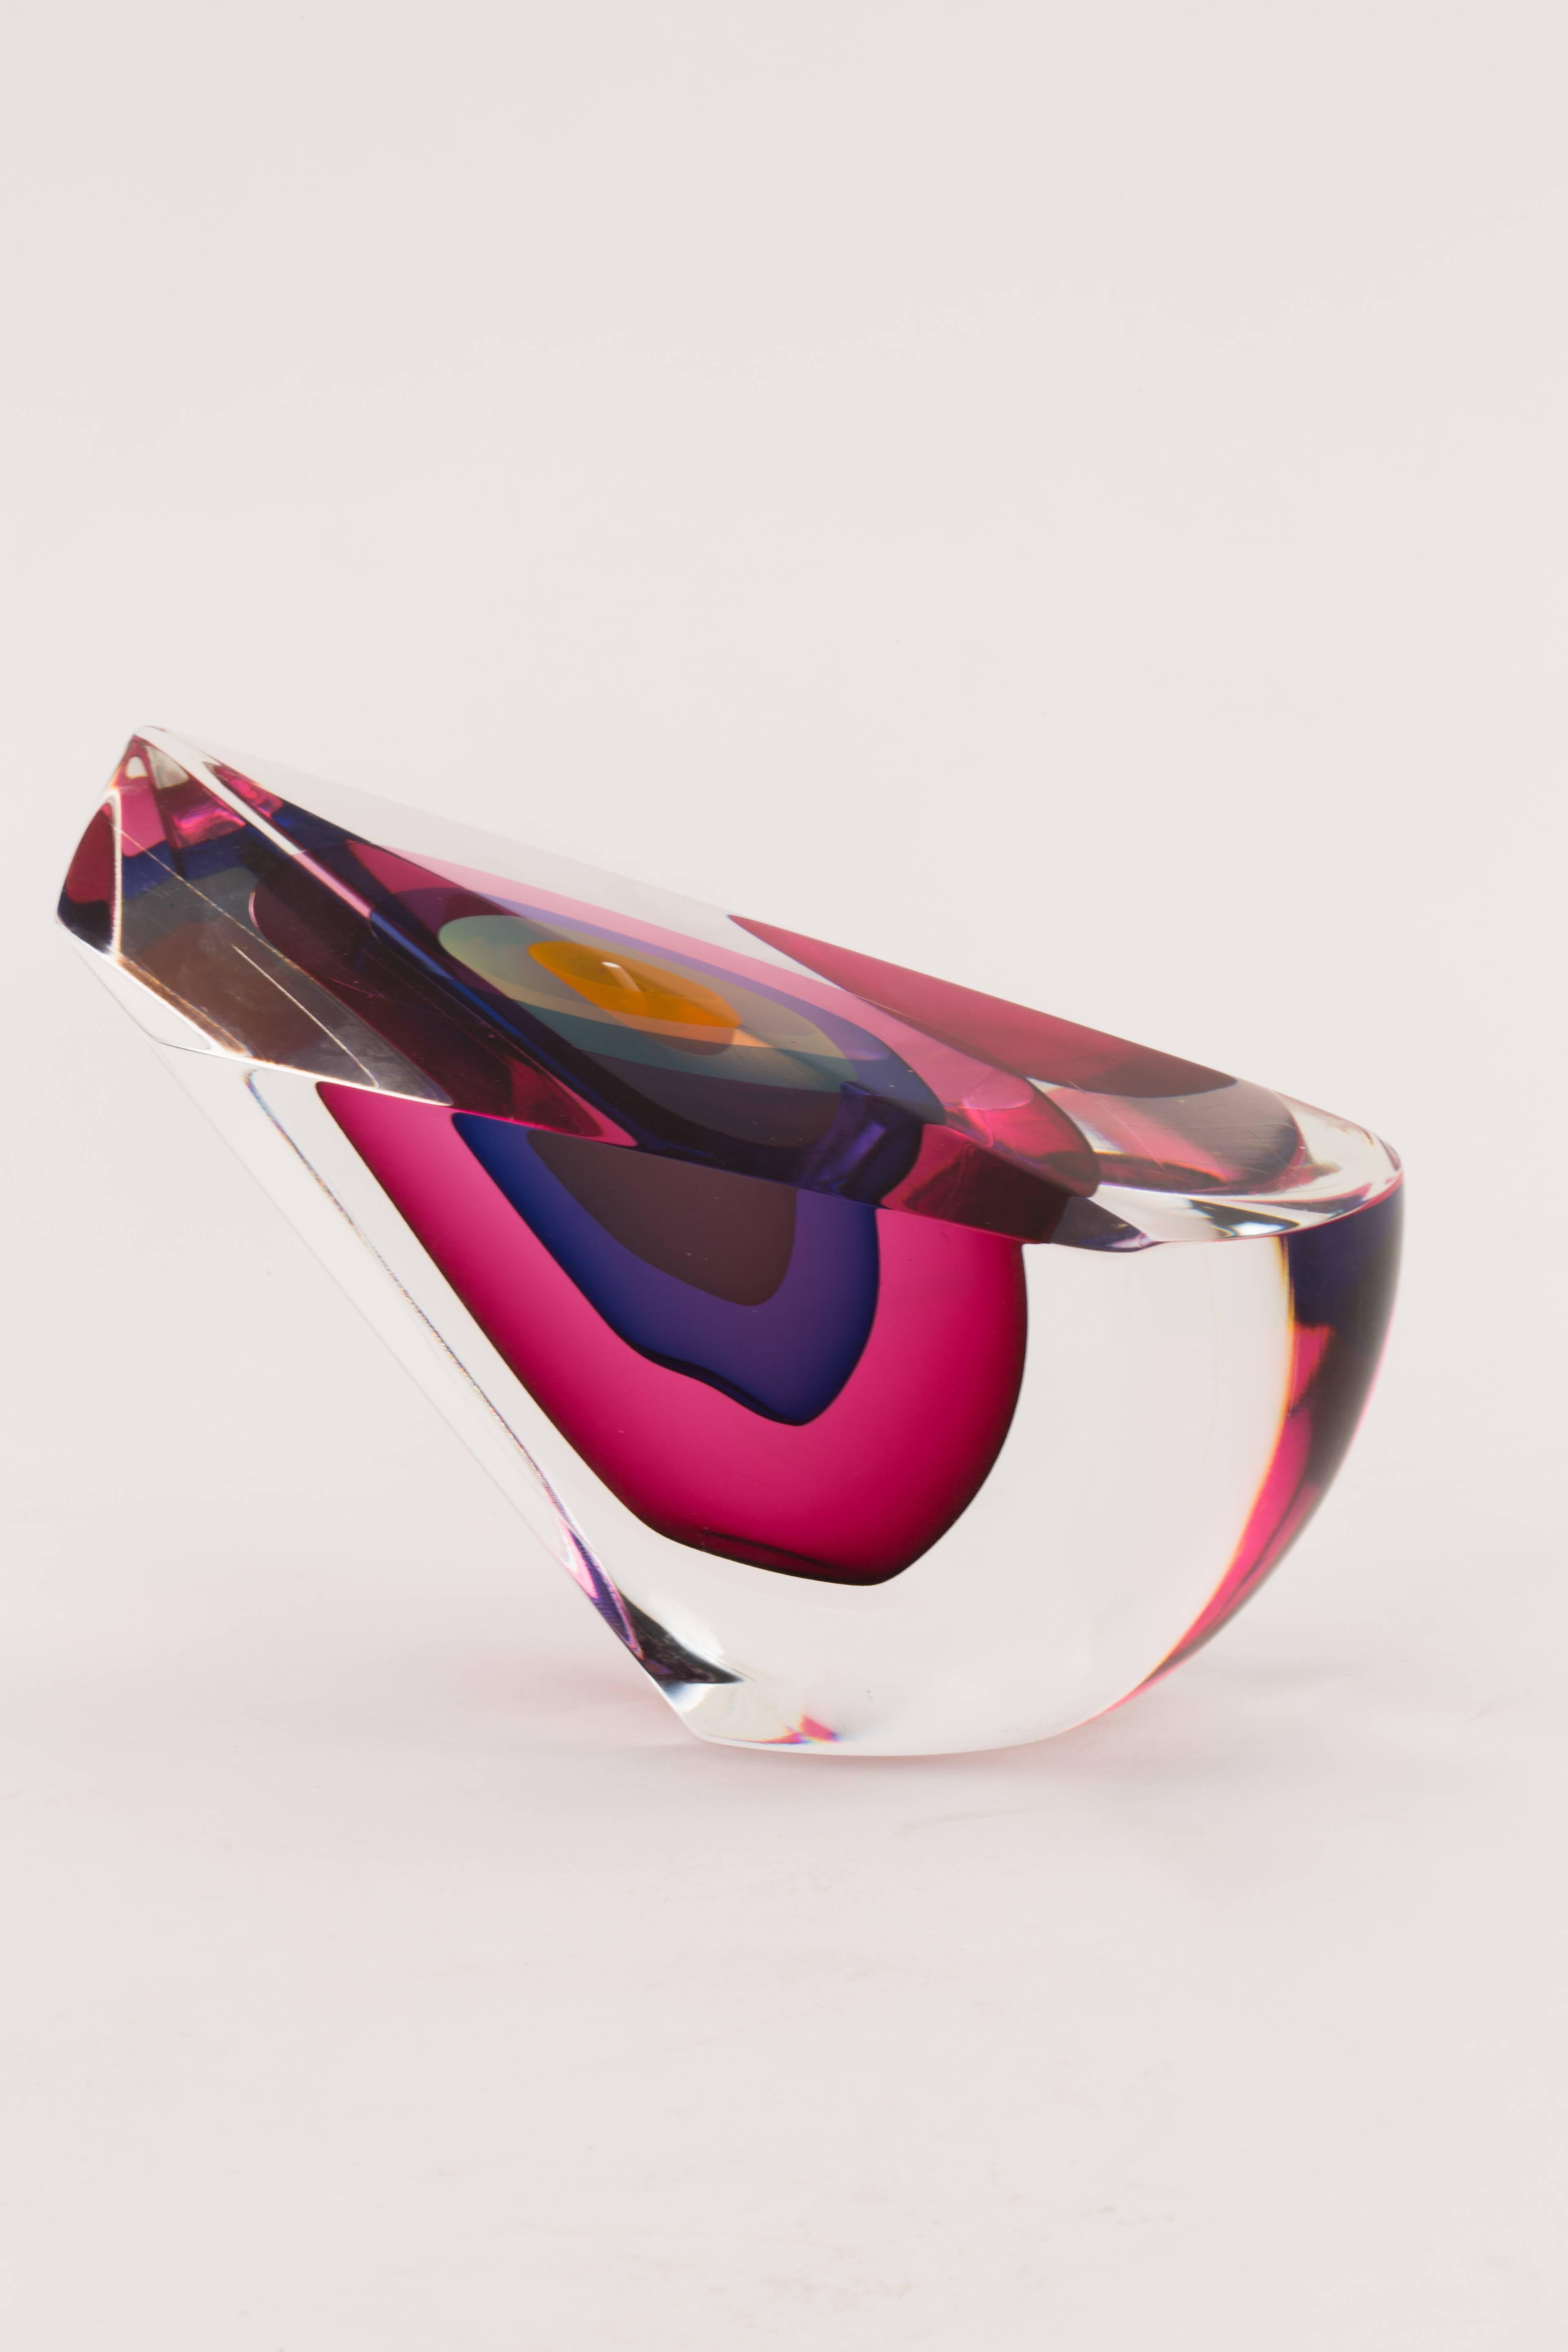 Modern Harvey Littleton Art Glass Sculpture